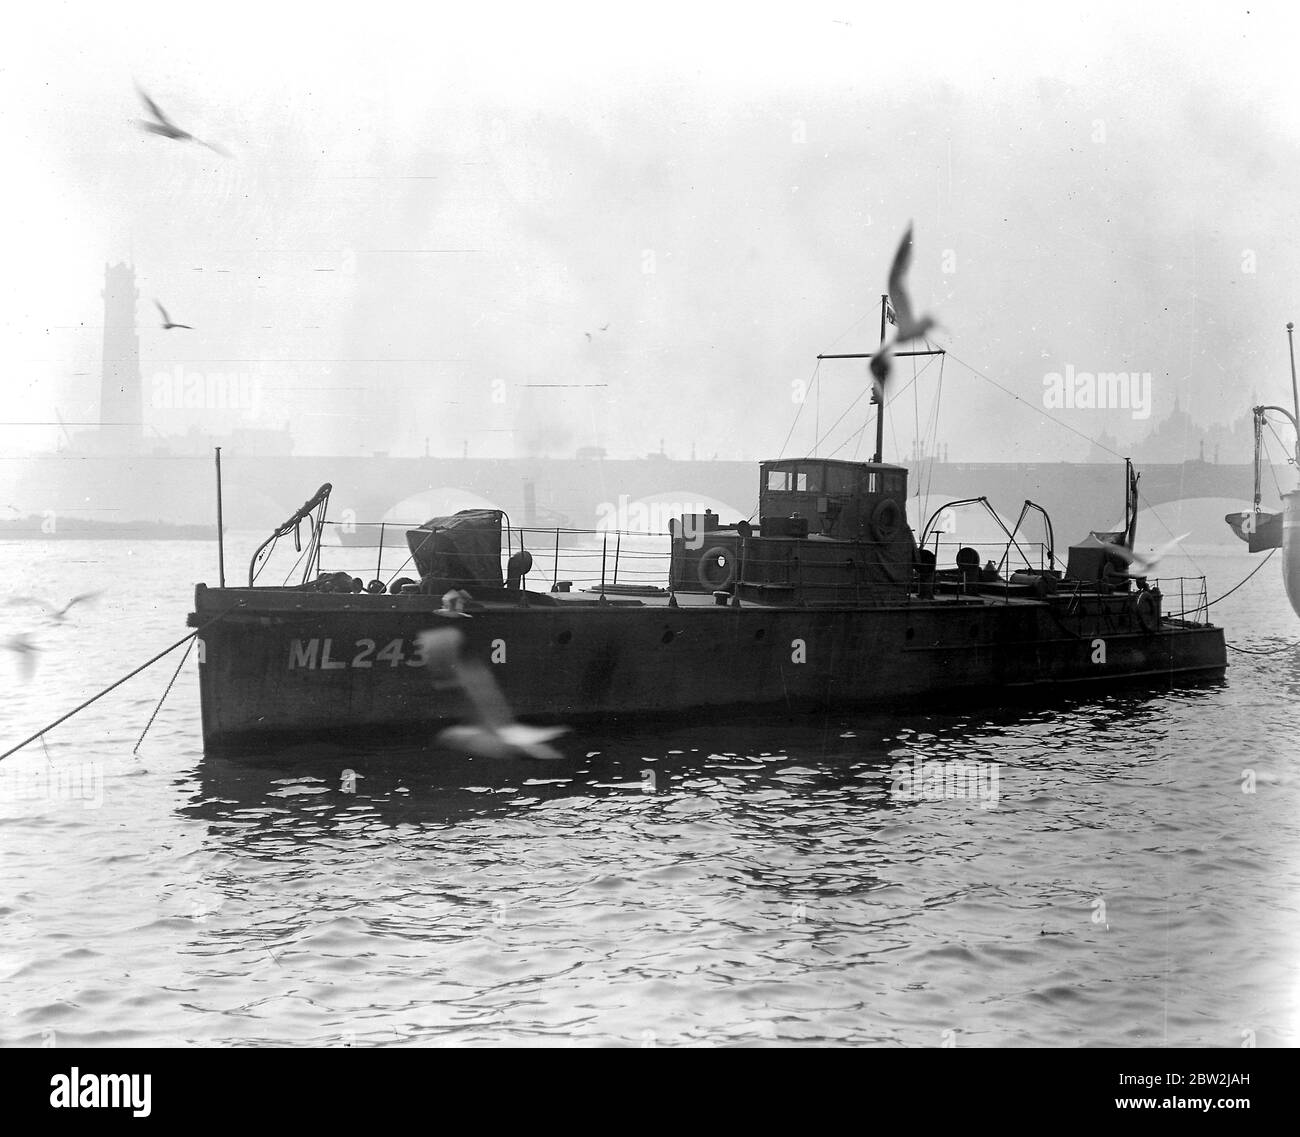 Le M.243 présenté par l'Amirauté aux Scouts de la mer d'Ashdown à des fins pédagogiques. 26 mai 1941 Banque D'Images